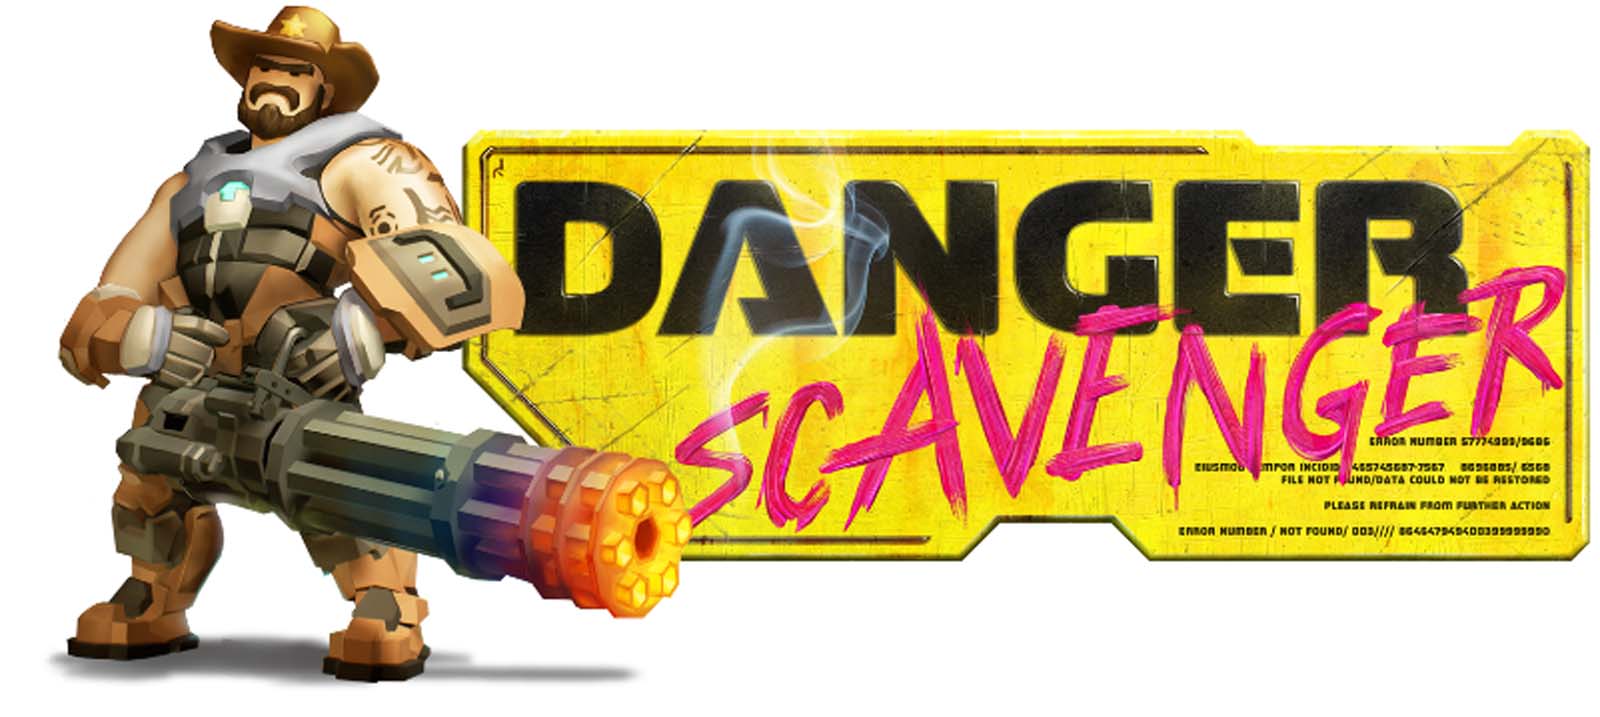 download Danger Scavenger free